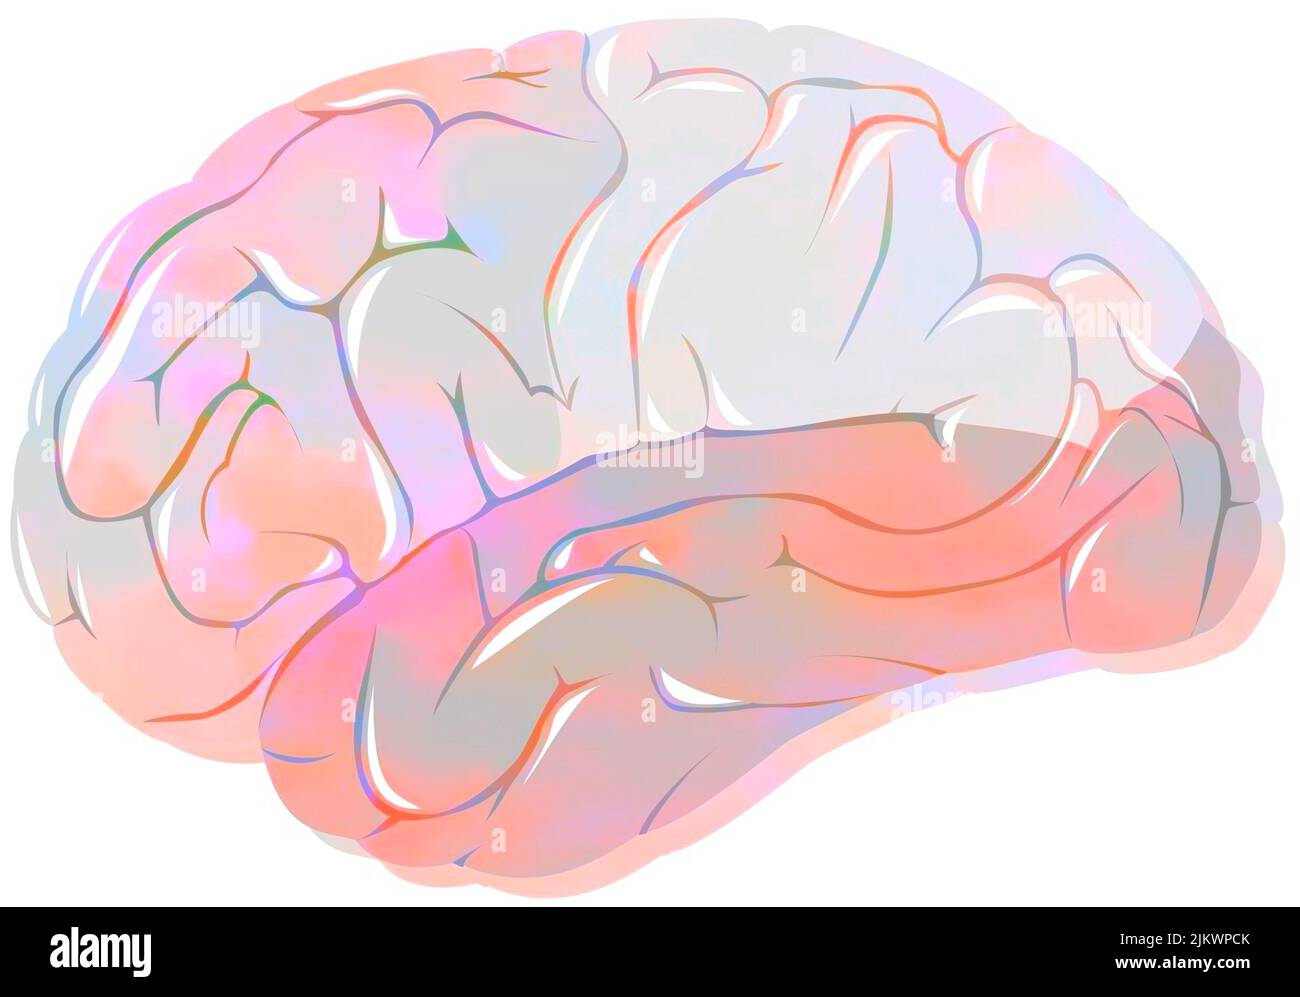 Lobi del cervello con lobi frontali, parietali, temporali e occipitali. Foto Stock